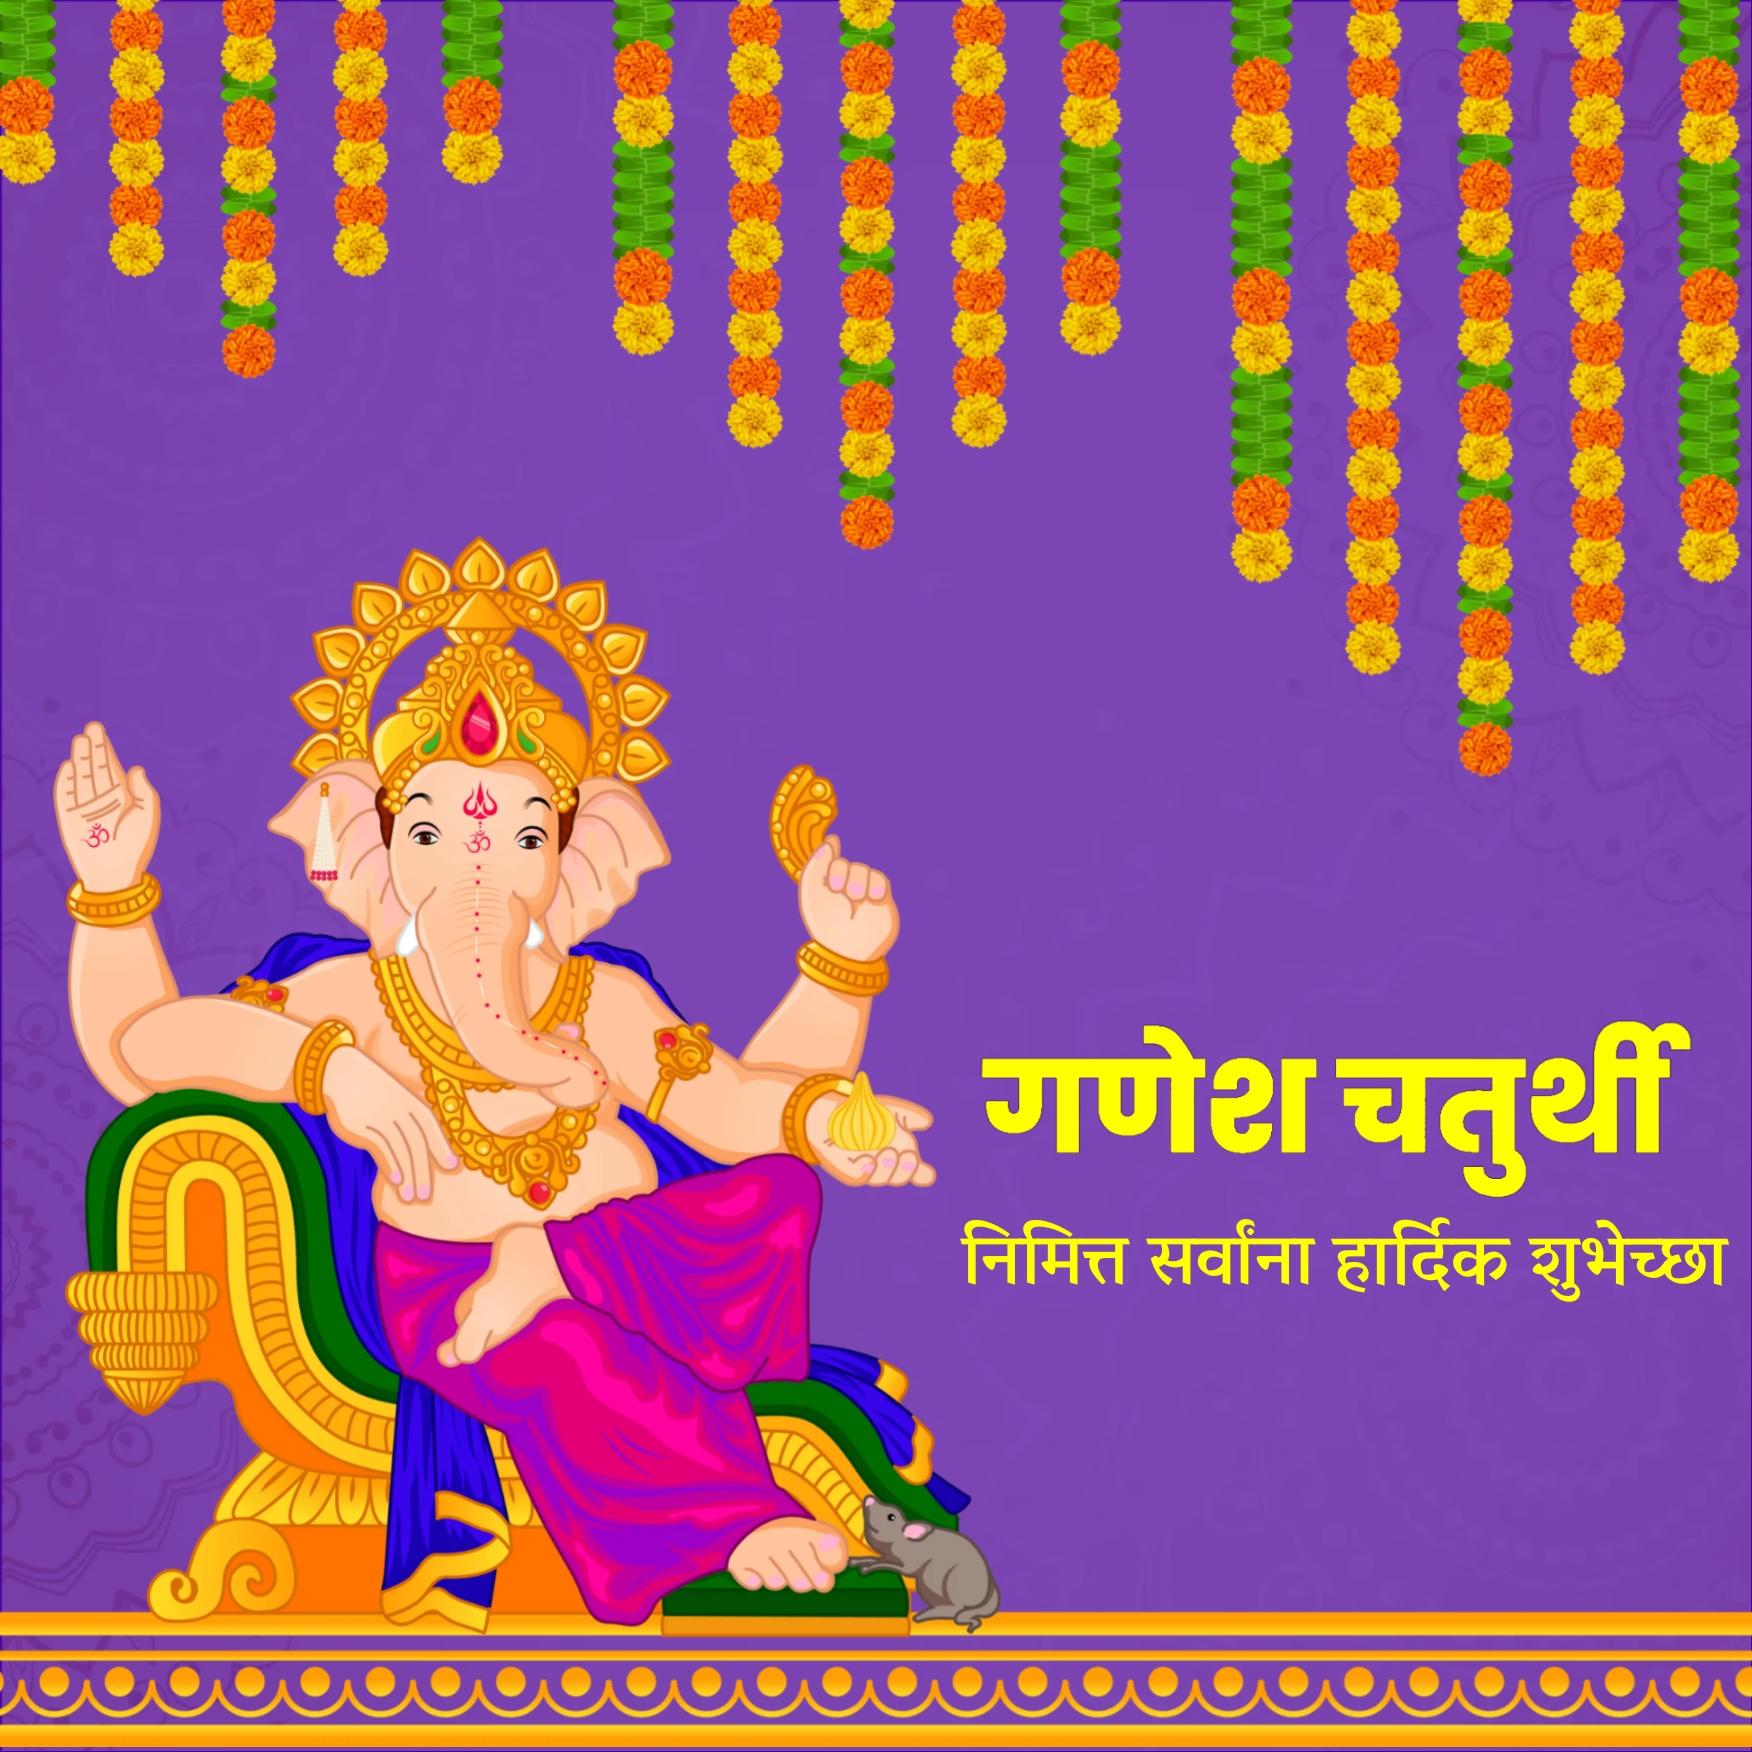 Happy Ganesh Chaturthi Images in Marathi